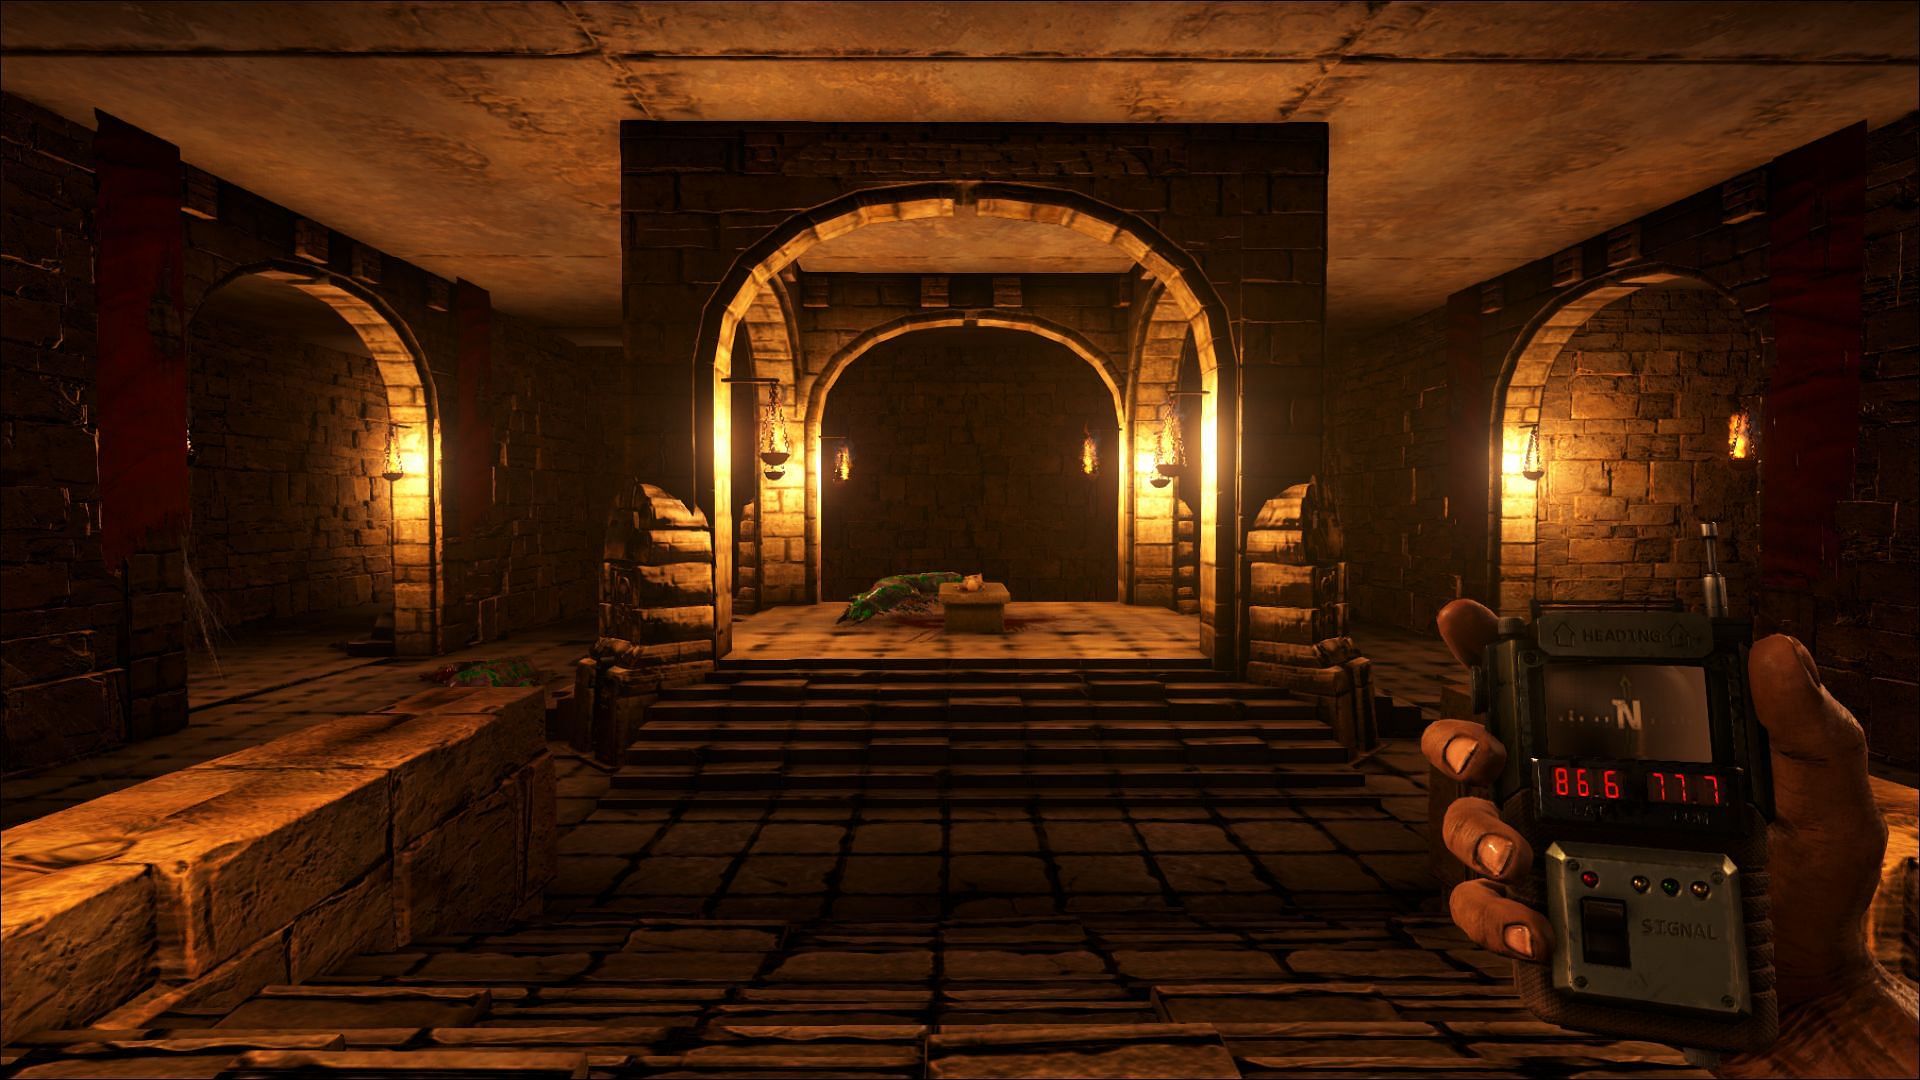 Central hall of labyrinth, ARK: Lost Island (Image via Sportskeeda)